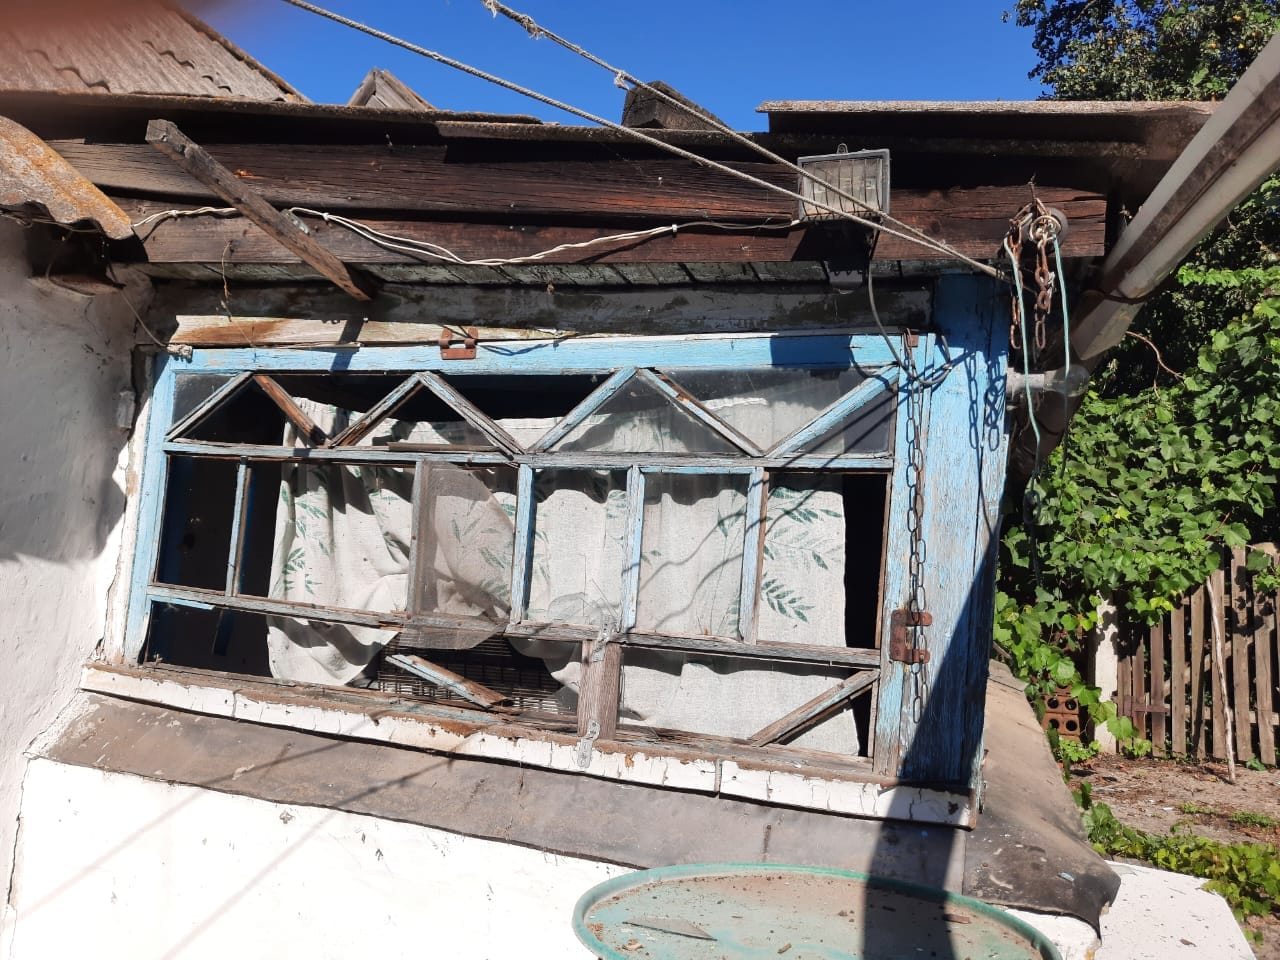 Частный дом, который разрушили россияне 17 августа в Донецкой области